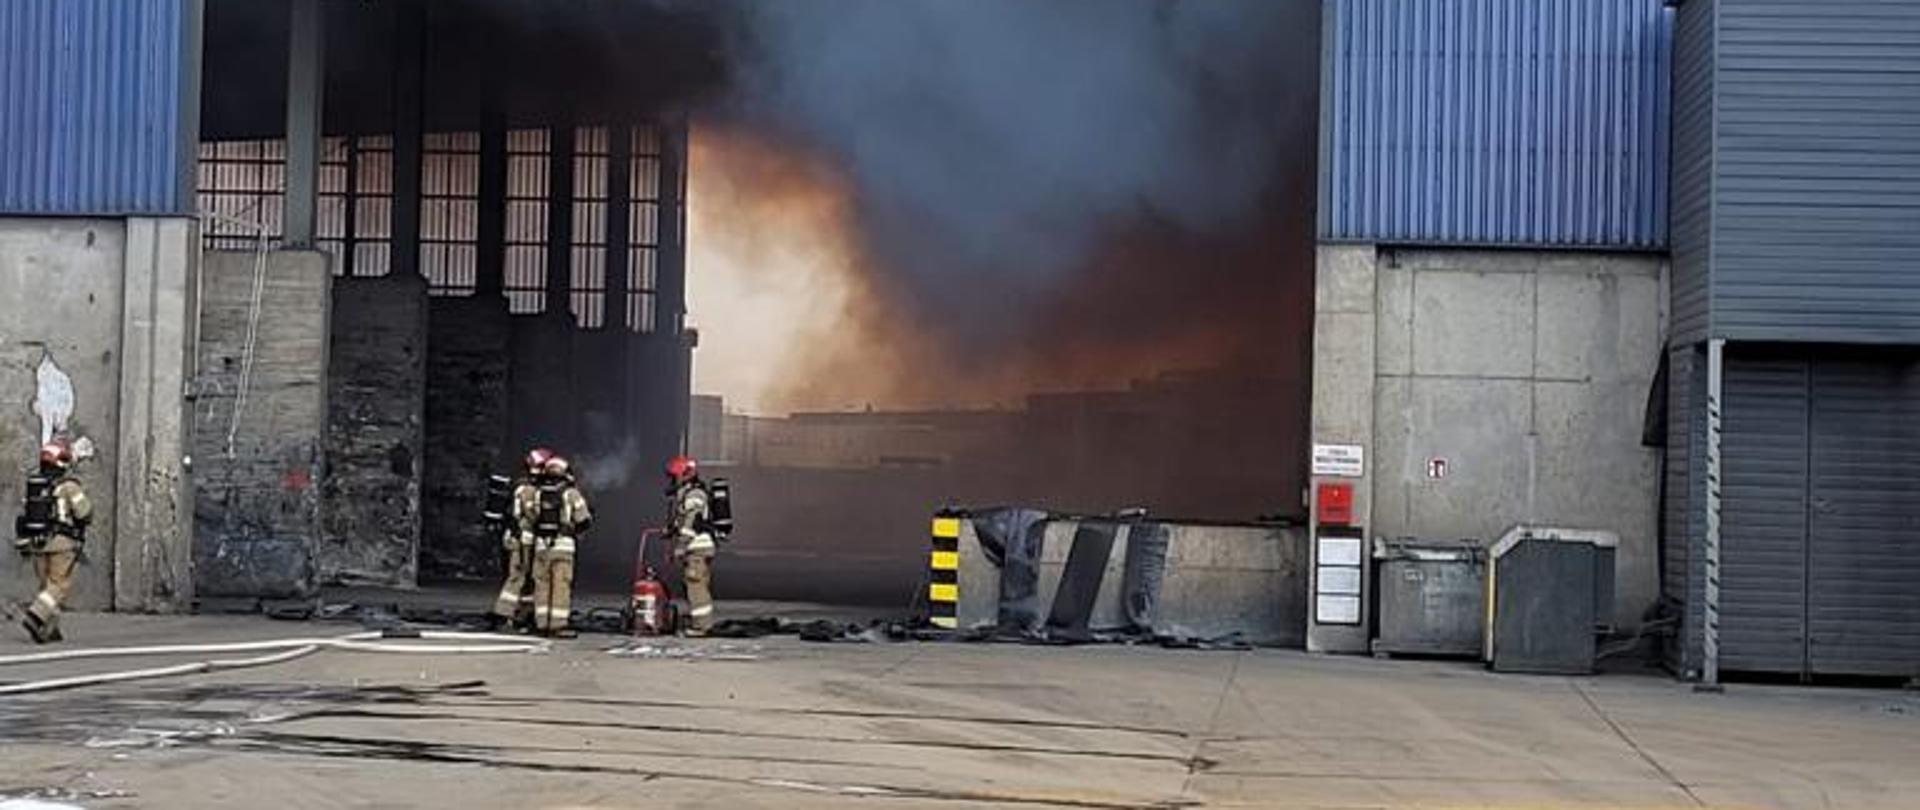 Pożar hali z odpadami w Skarimierzu, czterech strażaków podczas działań gaśniczych.